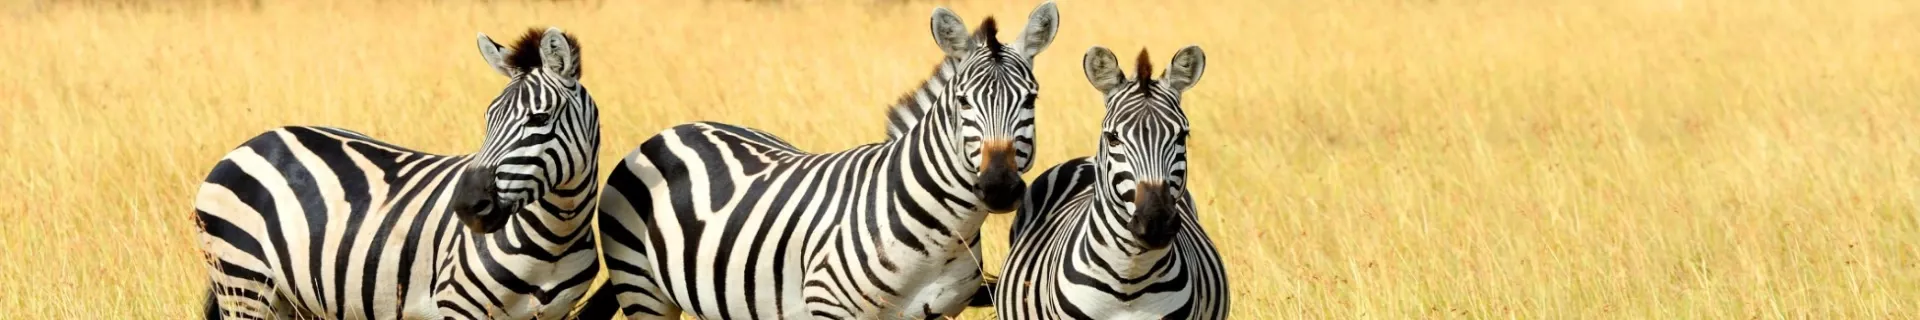 Familiegroepsreis Op safari in Zuid-Afrika